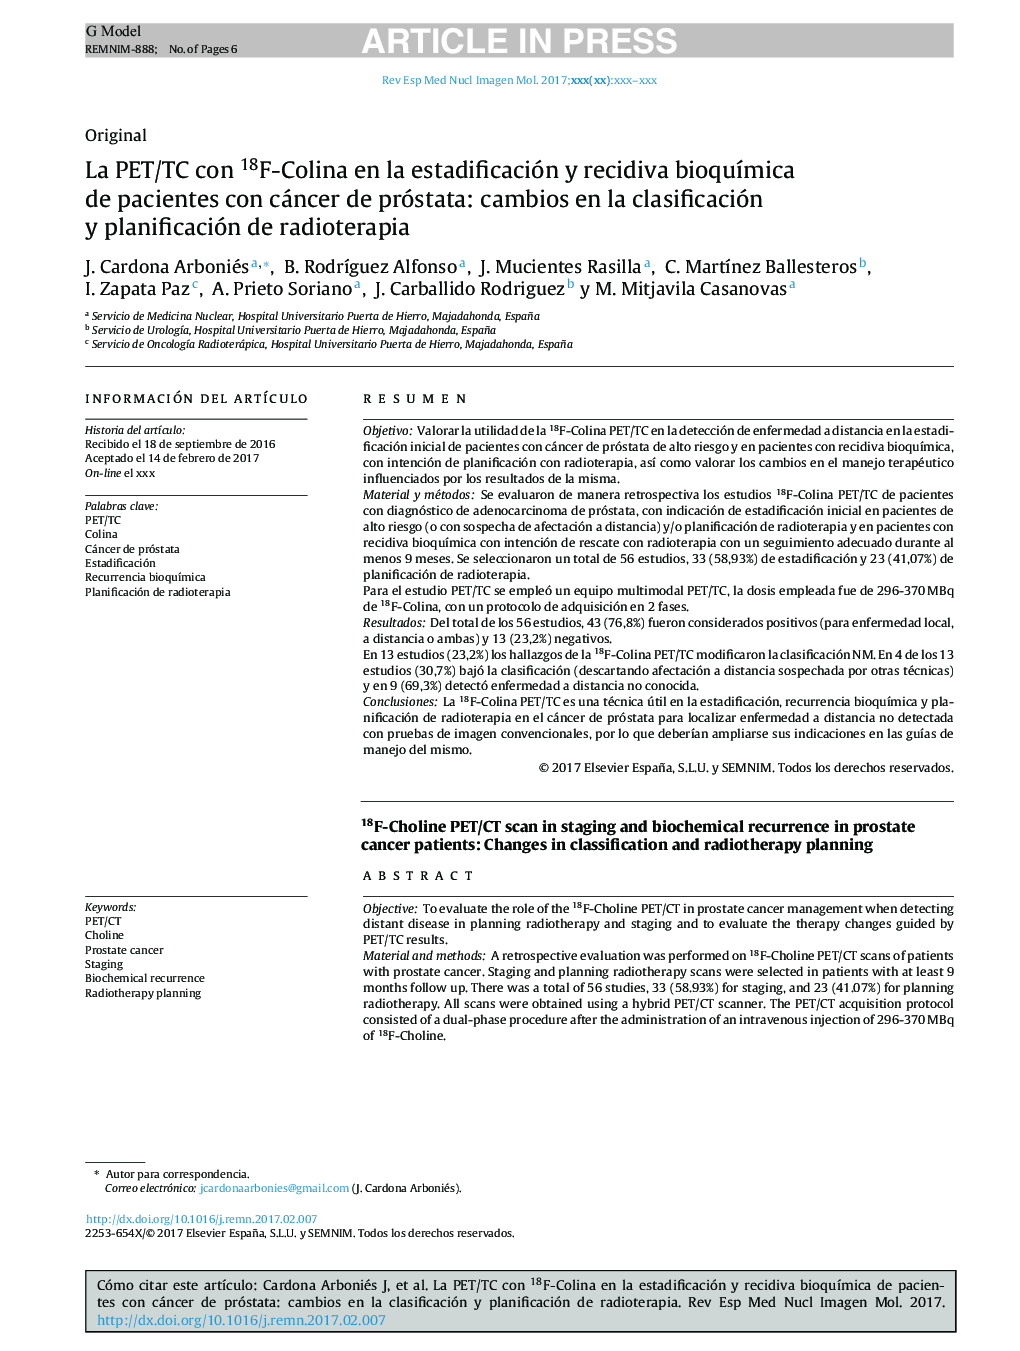 La PET/TC con 18F-Colina en la estadificación y recidiva bioquÃ­mica de pacientes con cáncer de próstata: cambios en la clasificación y planificación de radioterapia